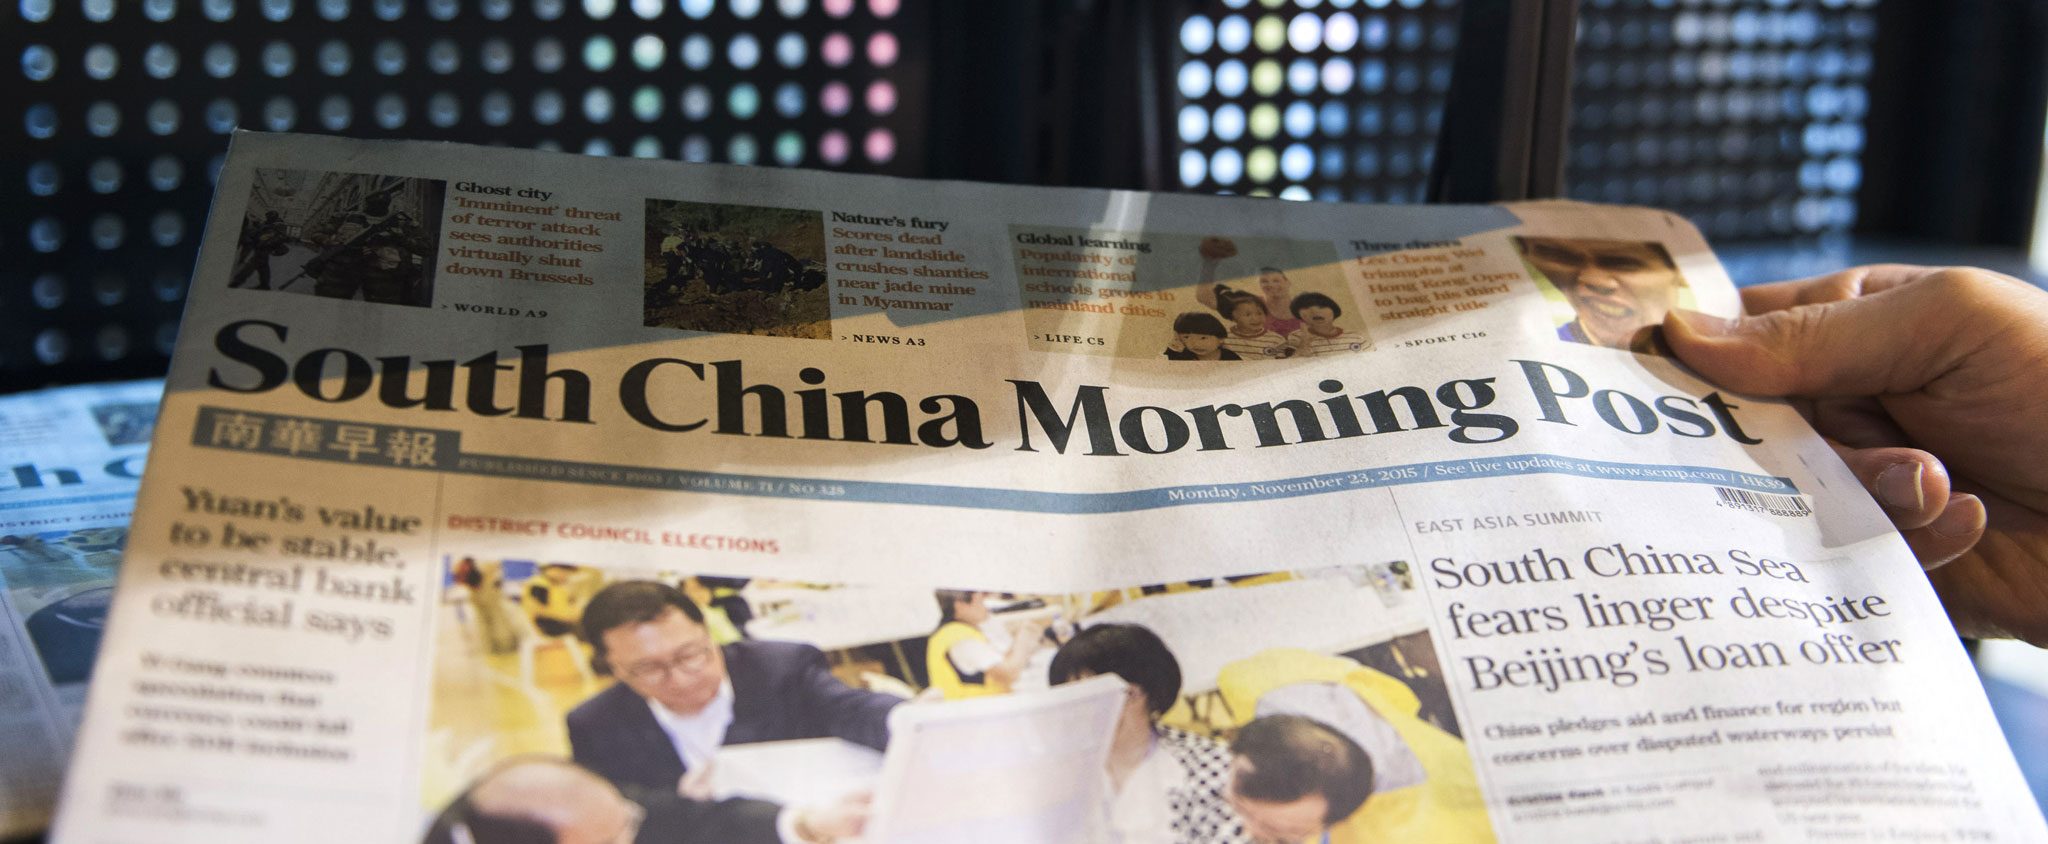 Le groupe Alibaba, géant de l'Internet chinois, a acheté en 2015 le South China Morning Post, le principal journal de langue anglaise de Hong Kong. L'objectif principal de la démarche est, pour le dirigeant du groupe, "d'améliorer l'image de la Chine" et d'offrir une alternative à ce qu'il appelle le point de vue biaisé des organes de presse occidentaux. (Source : FT)